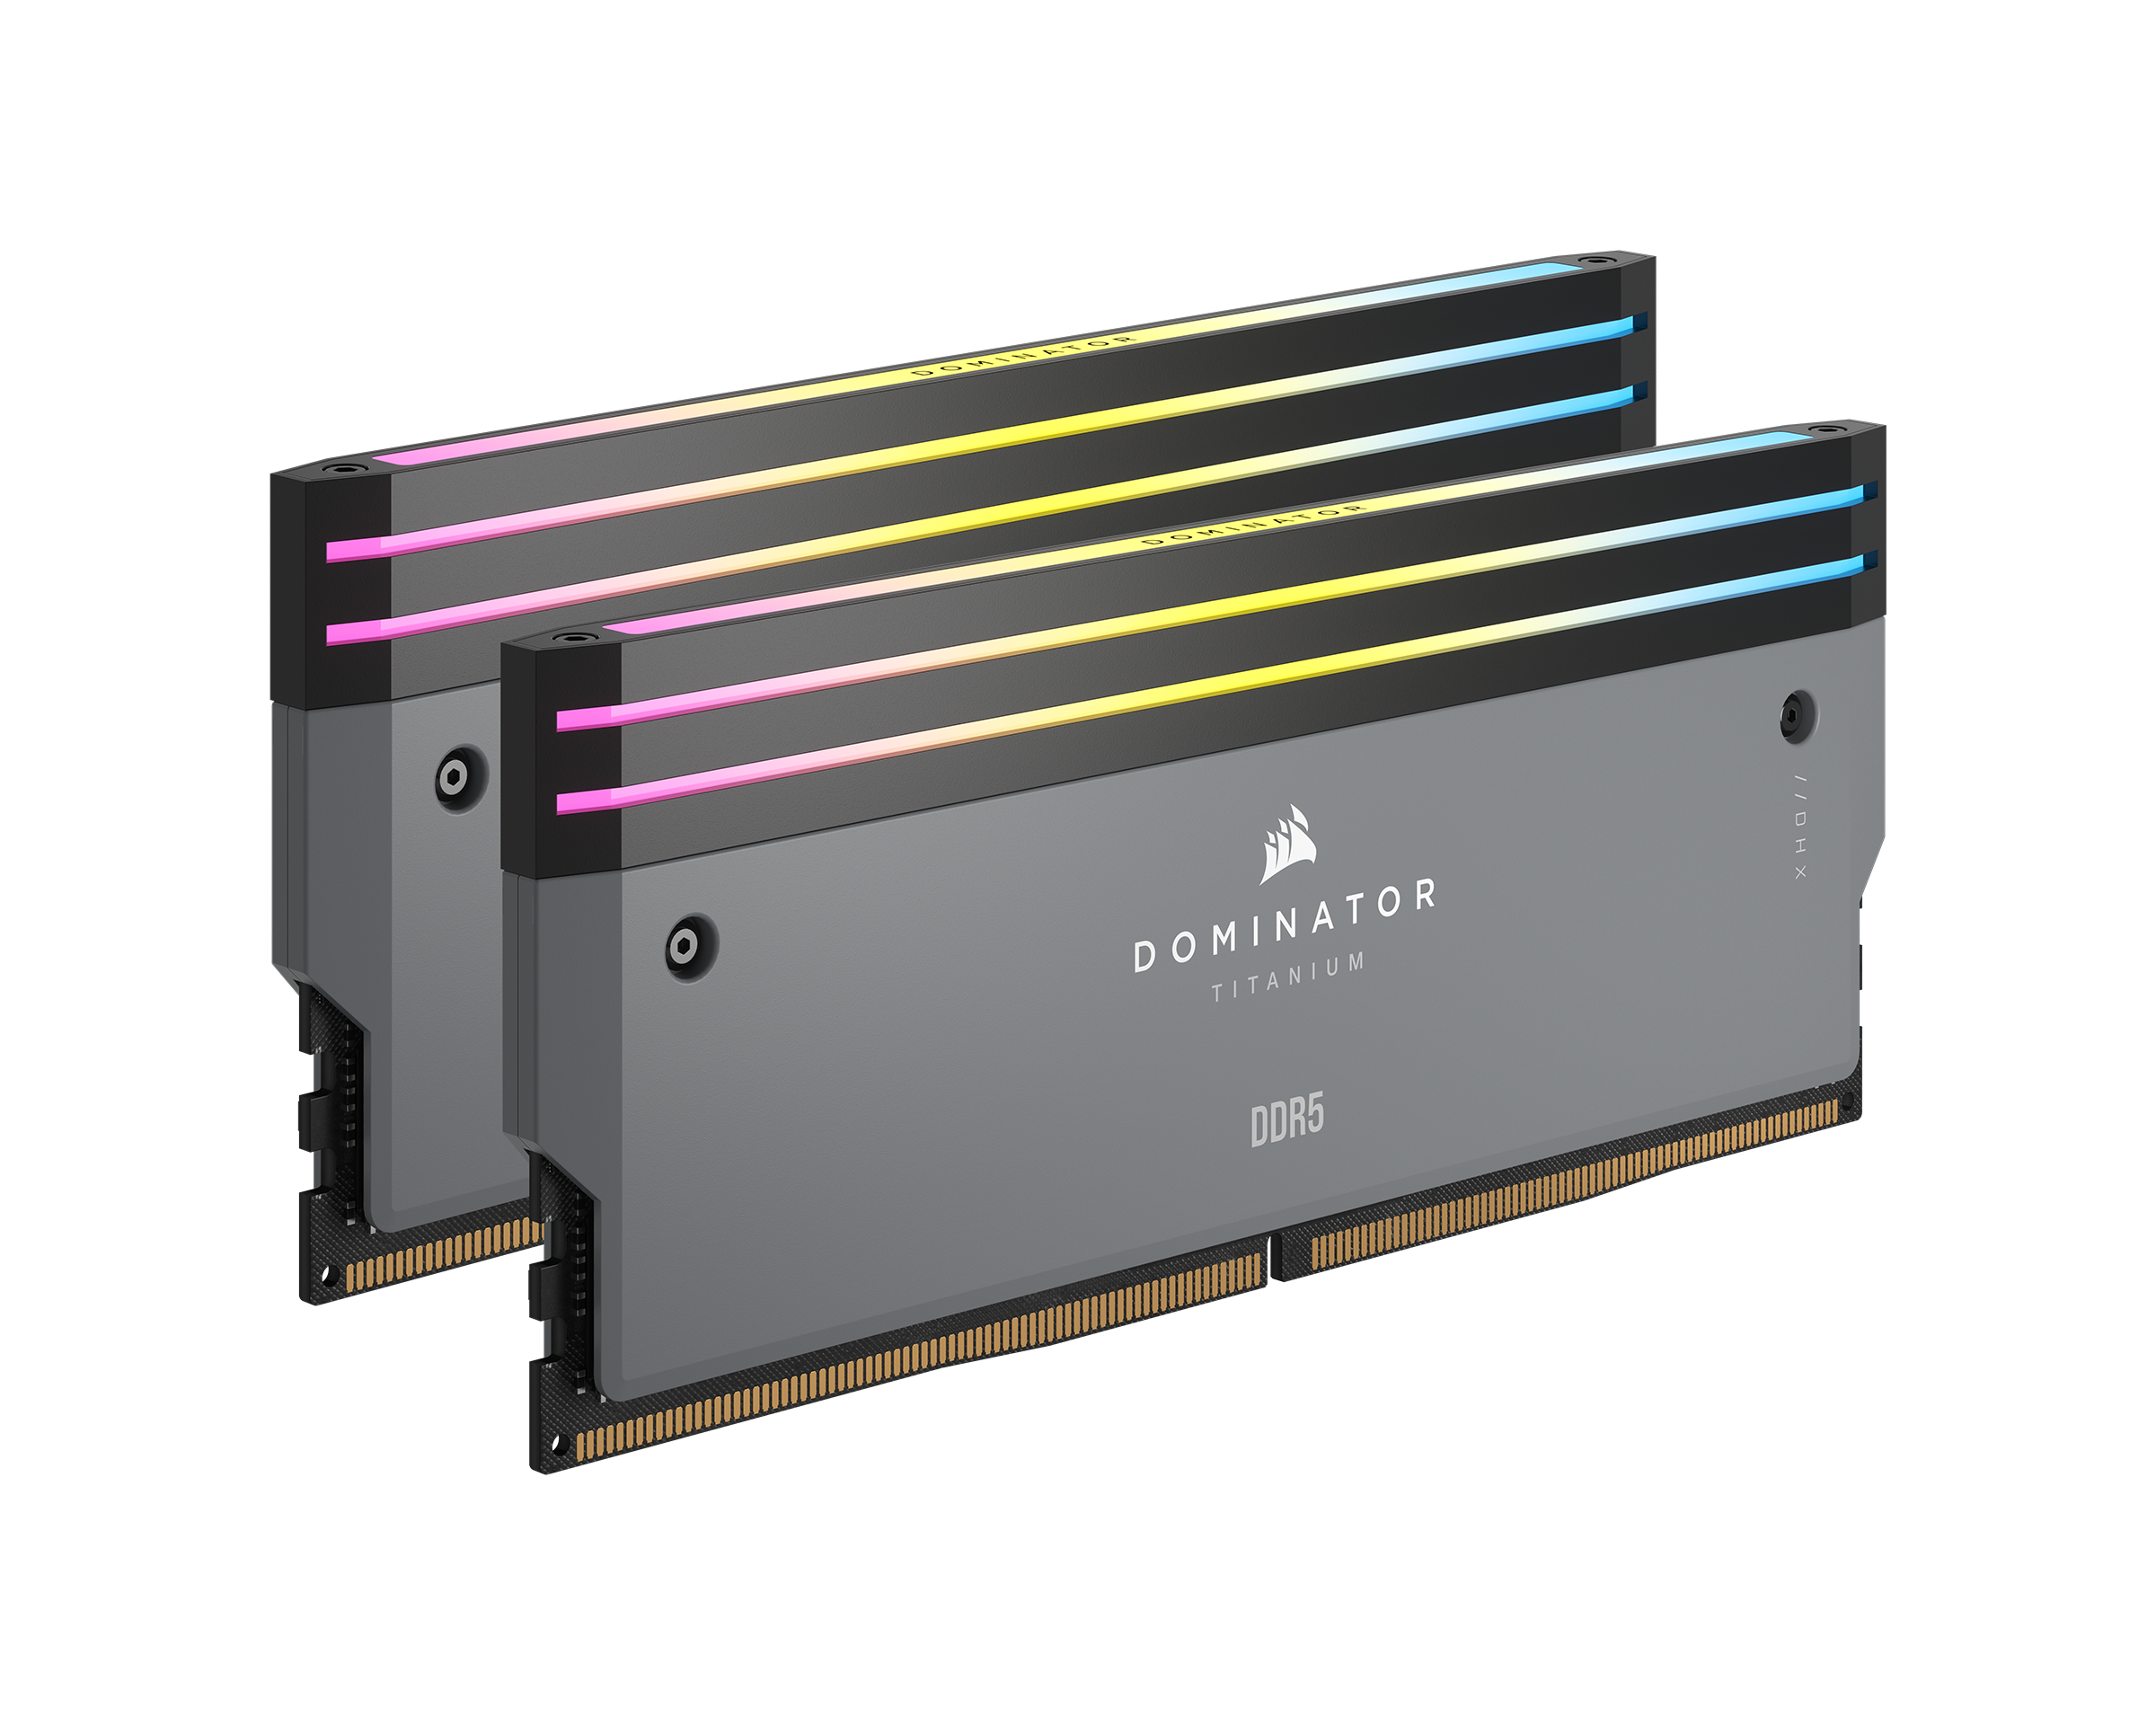 DOMINATOR TITANIUM RGB DDR5 Memory | CORSAIR